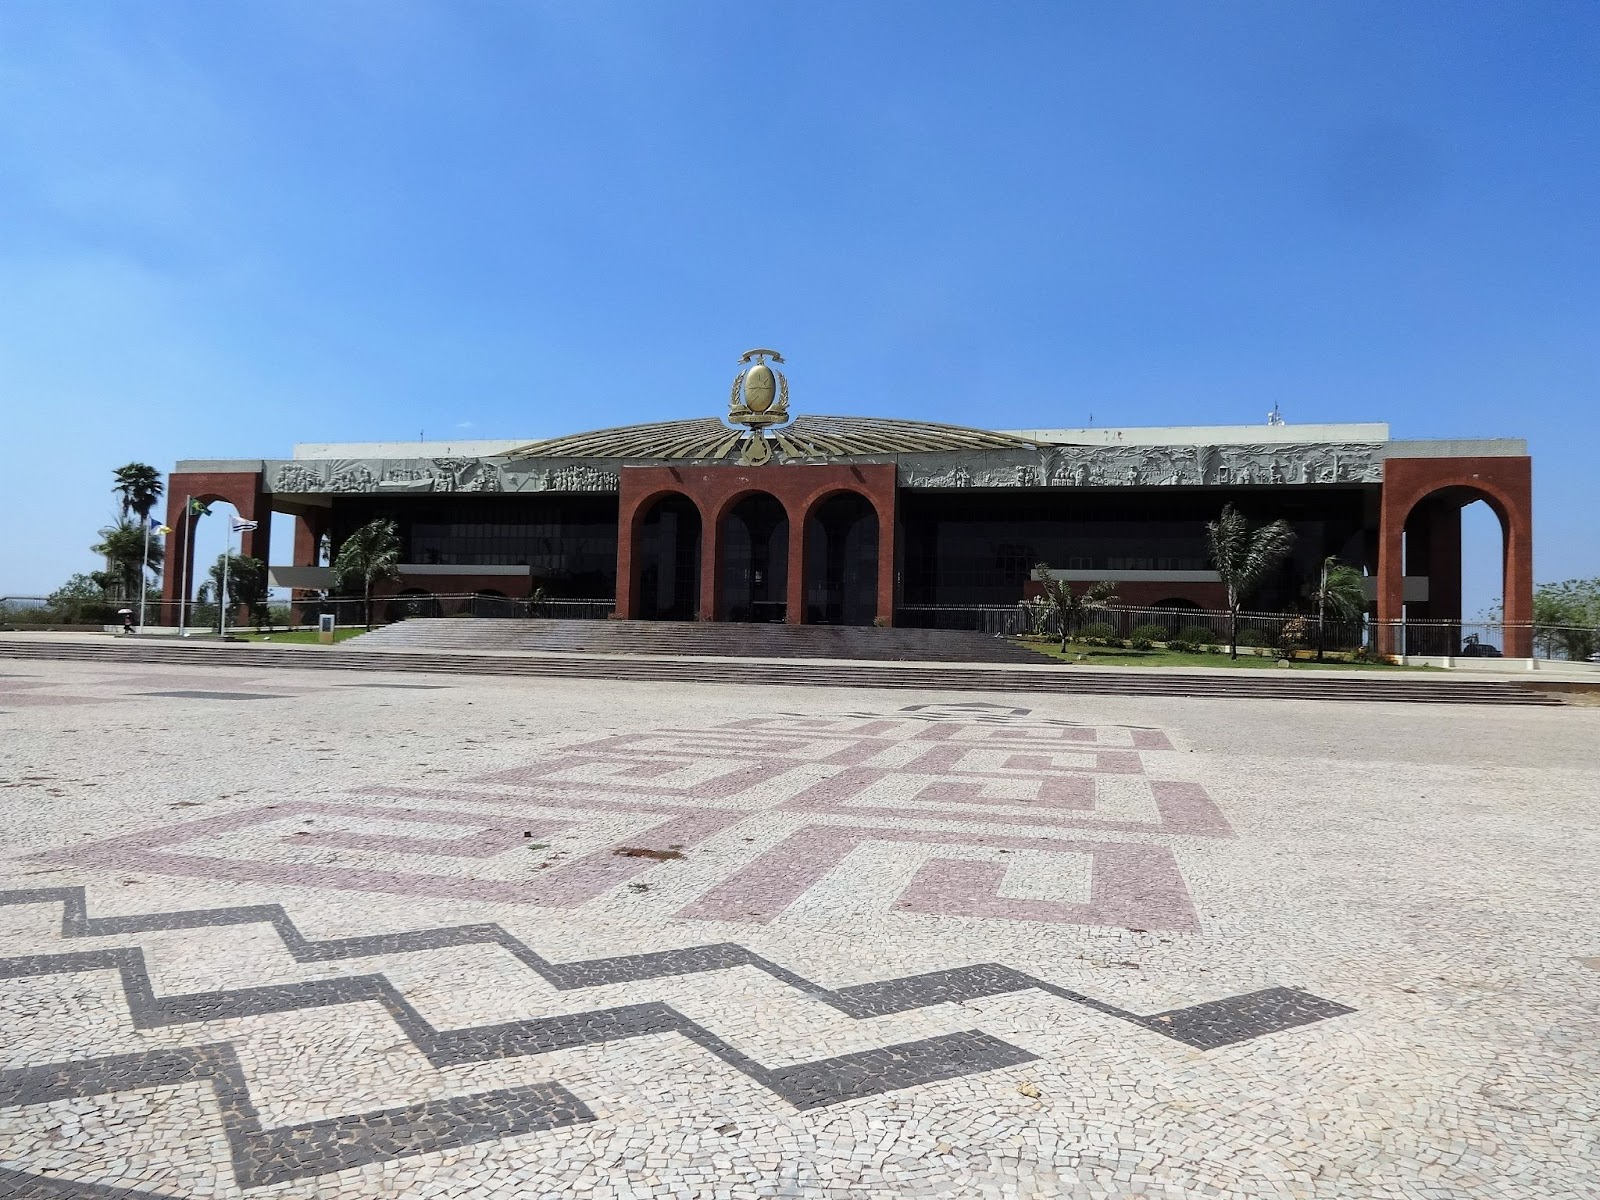 Foto tirada da fachada do Palácio Araguaia. No chão, pedras portuguesas que formam desenhos. Céu limpo e azul